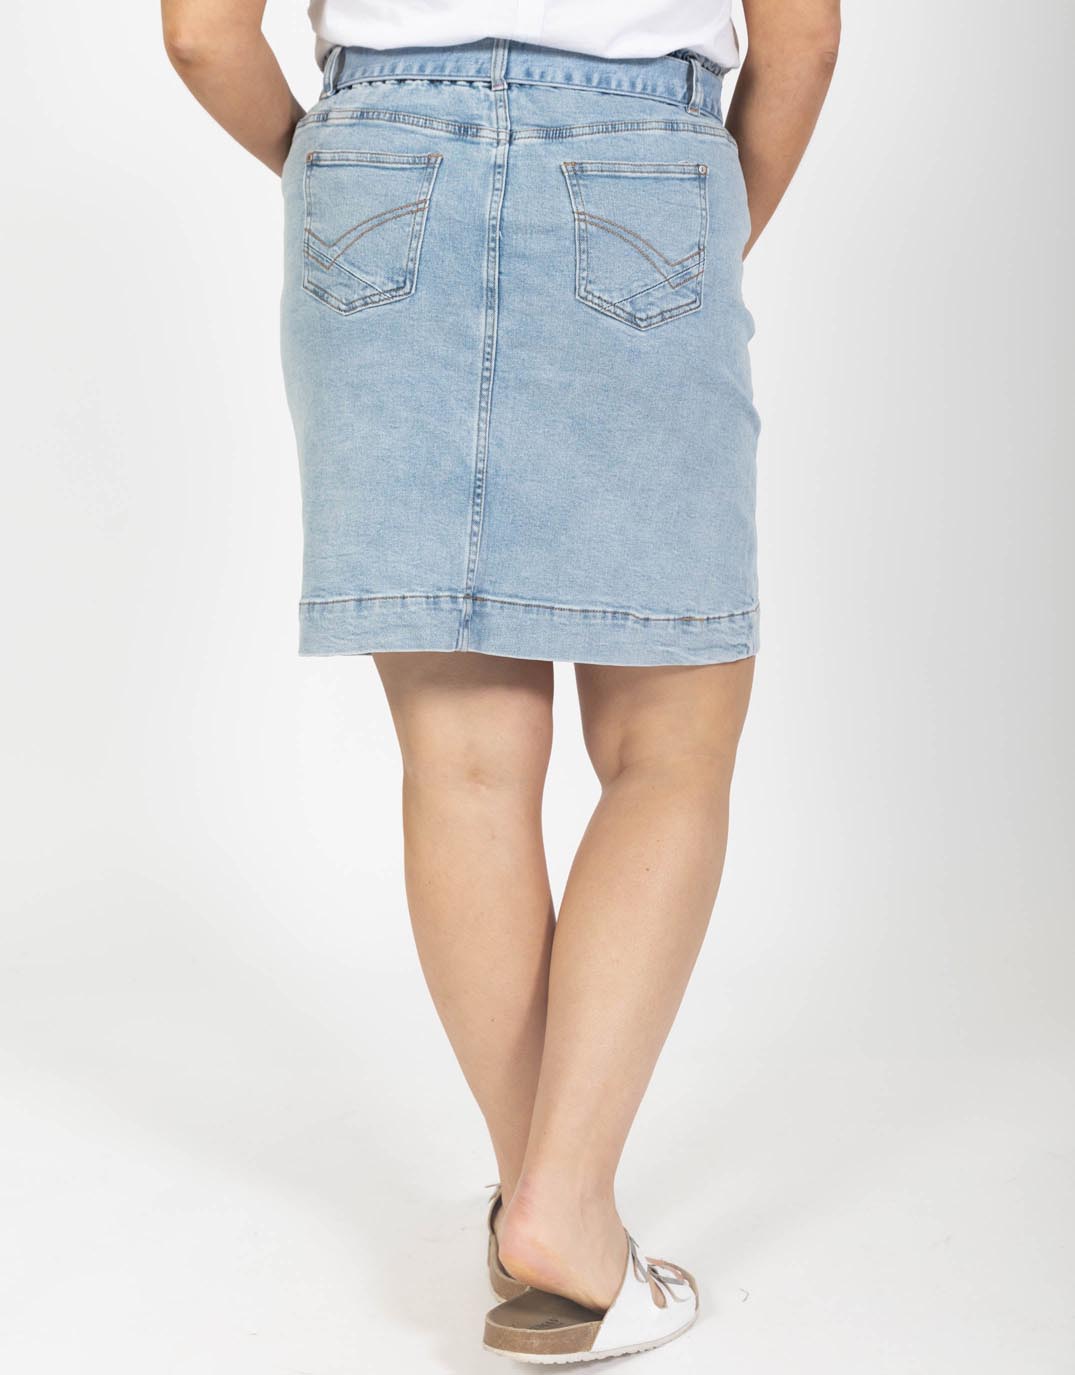 Elm Plus Size Gracie Denim Skirt - Mid Blue Denim | Plus Size Clothing